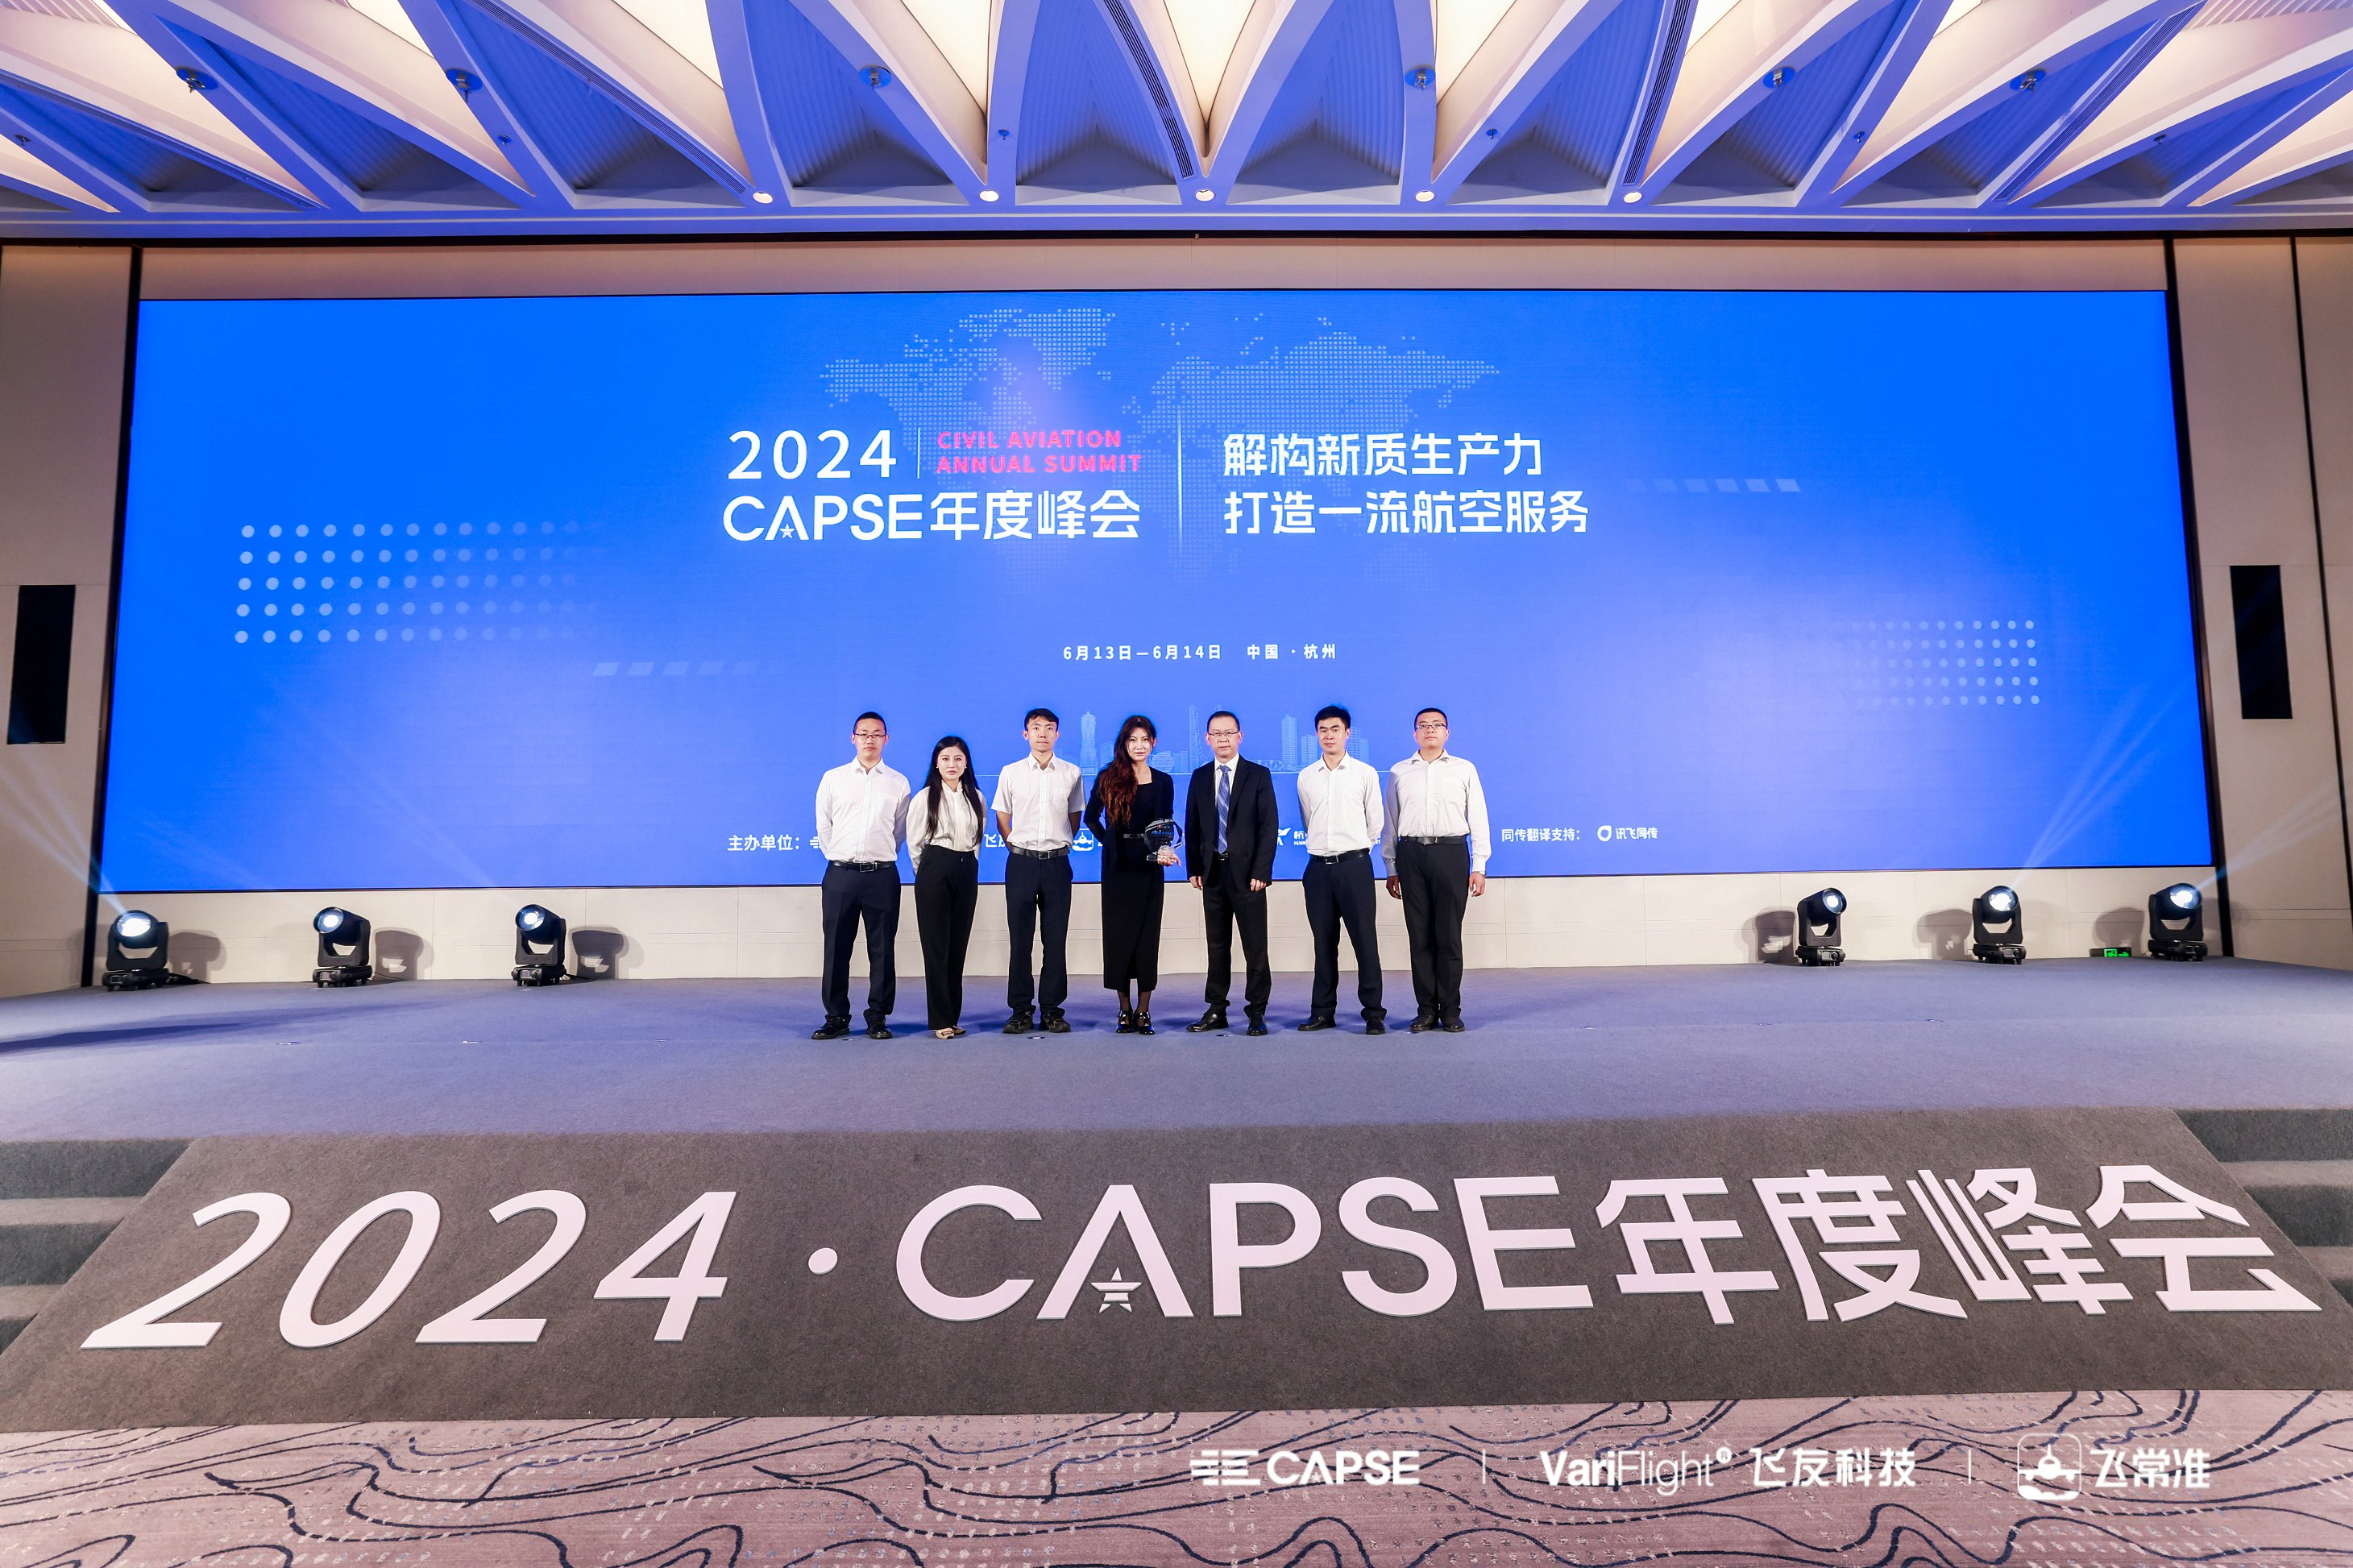 昆明航空荣获CAPSE年度峰会“质量提升先锋奖”